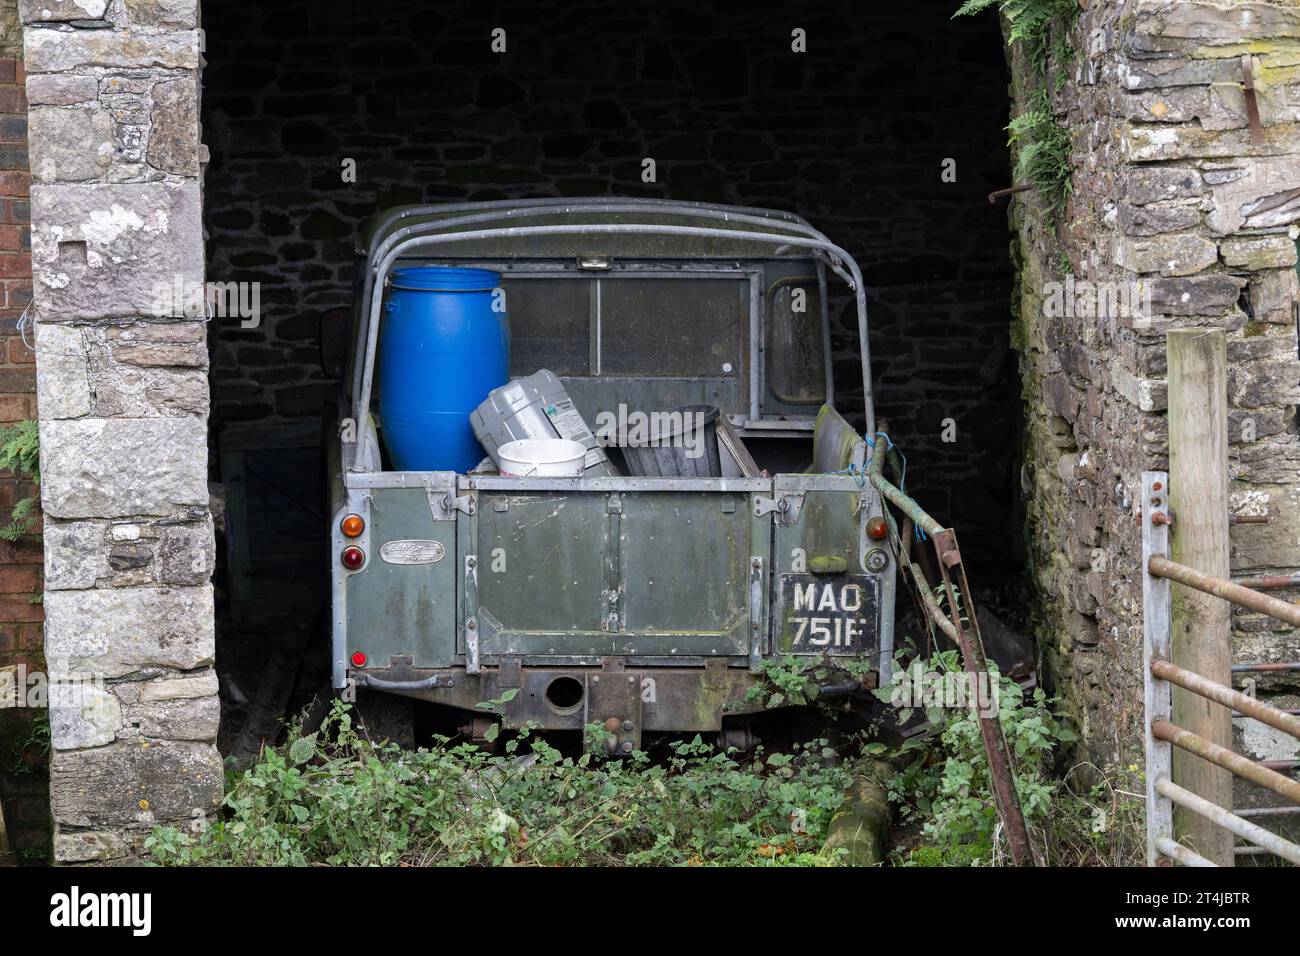 Der alte Land Rover der 2. Serie wurde in einer Bauernscheune aufgegeben. Cumbria, Großbritannien. Stockfoto